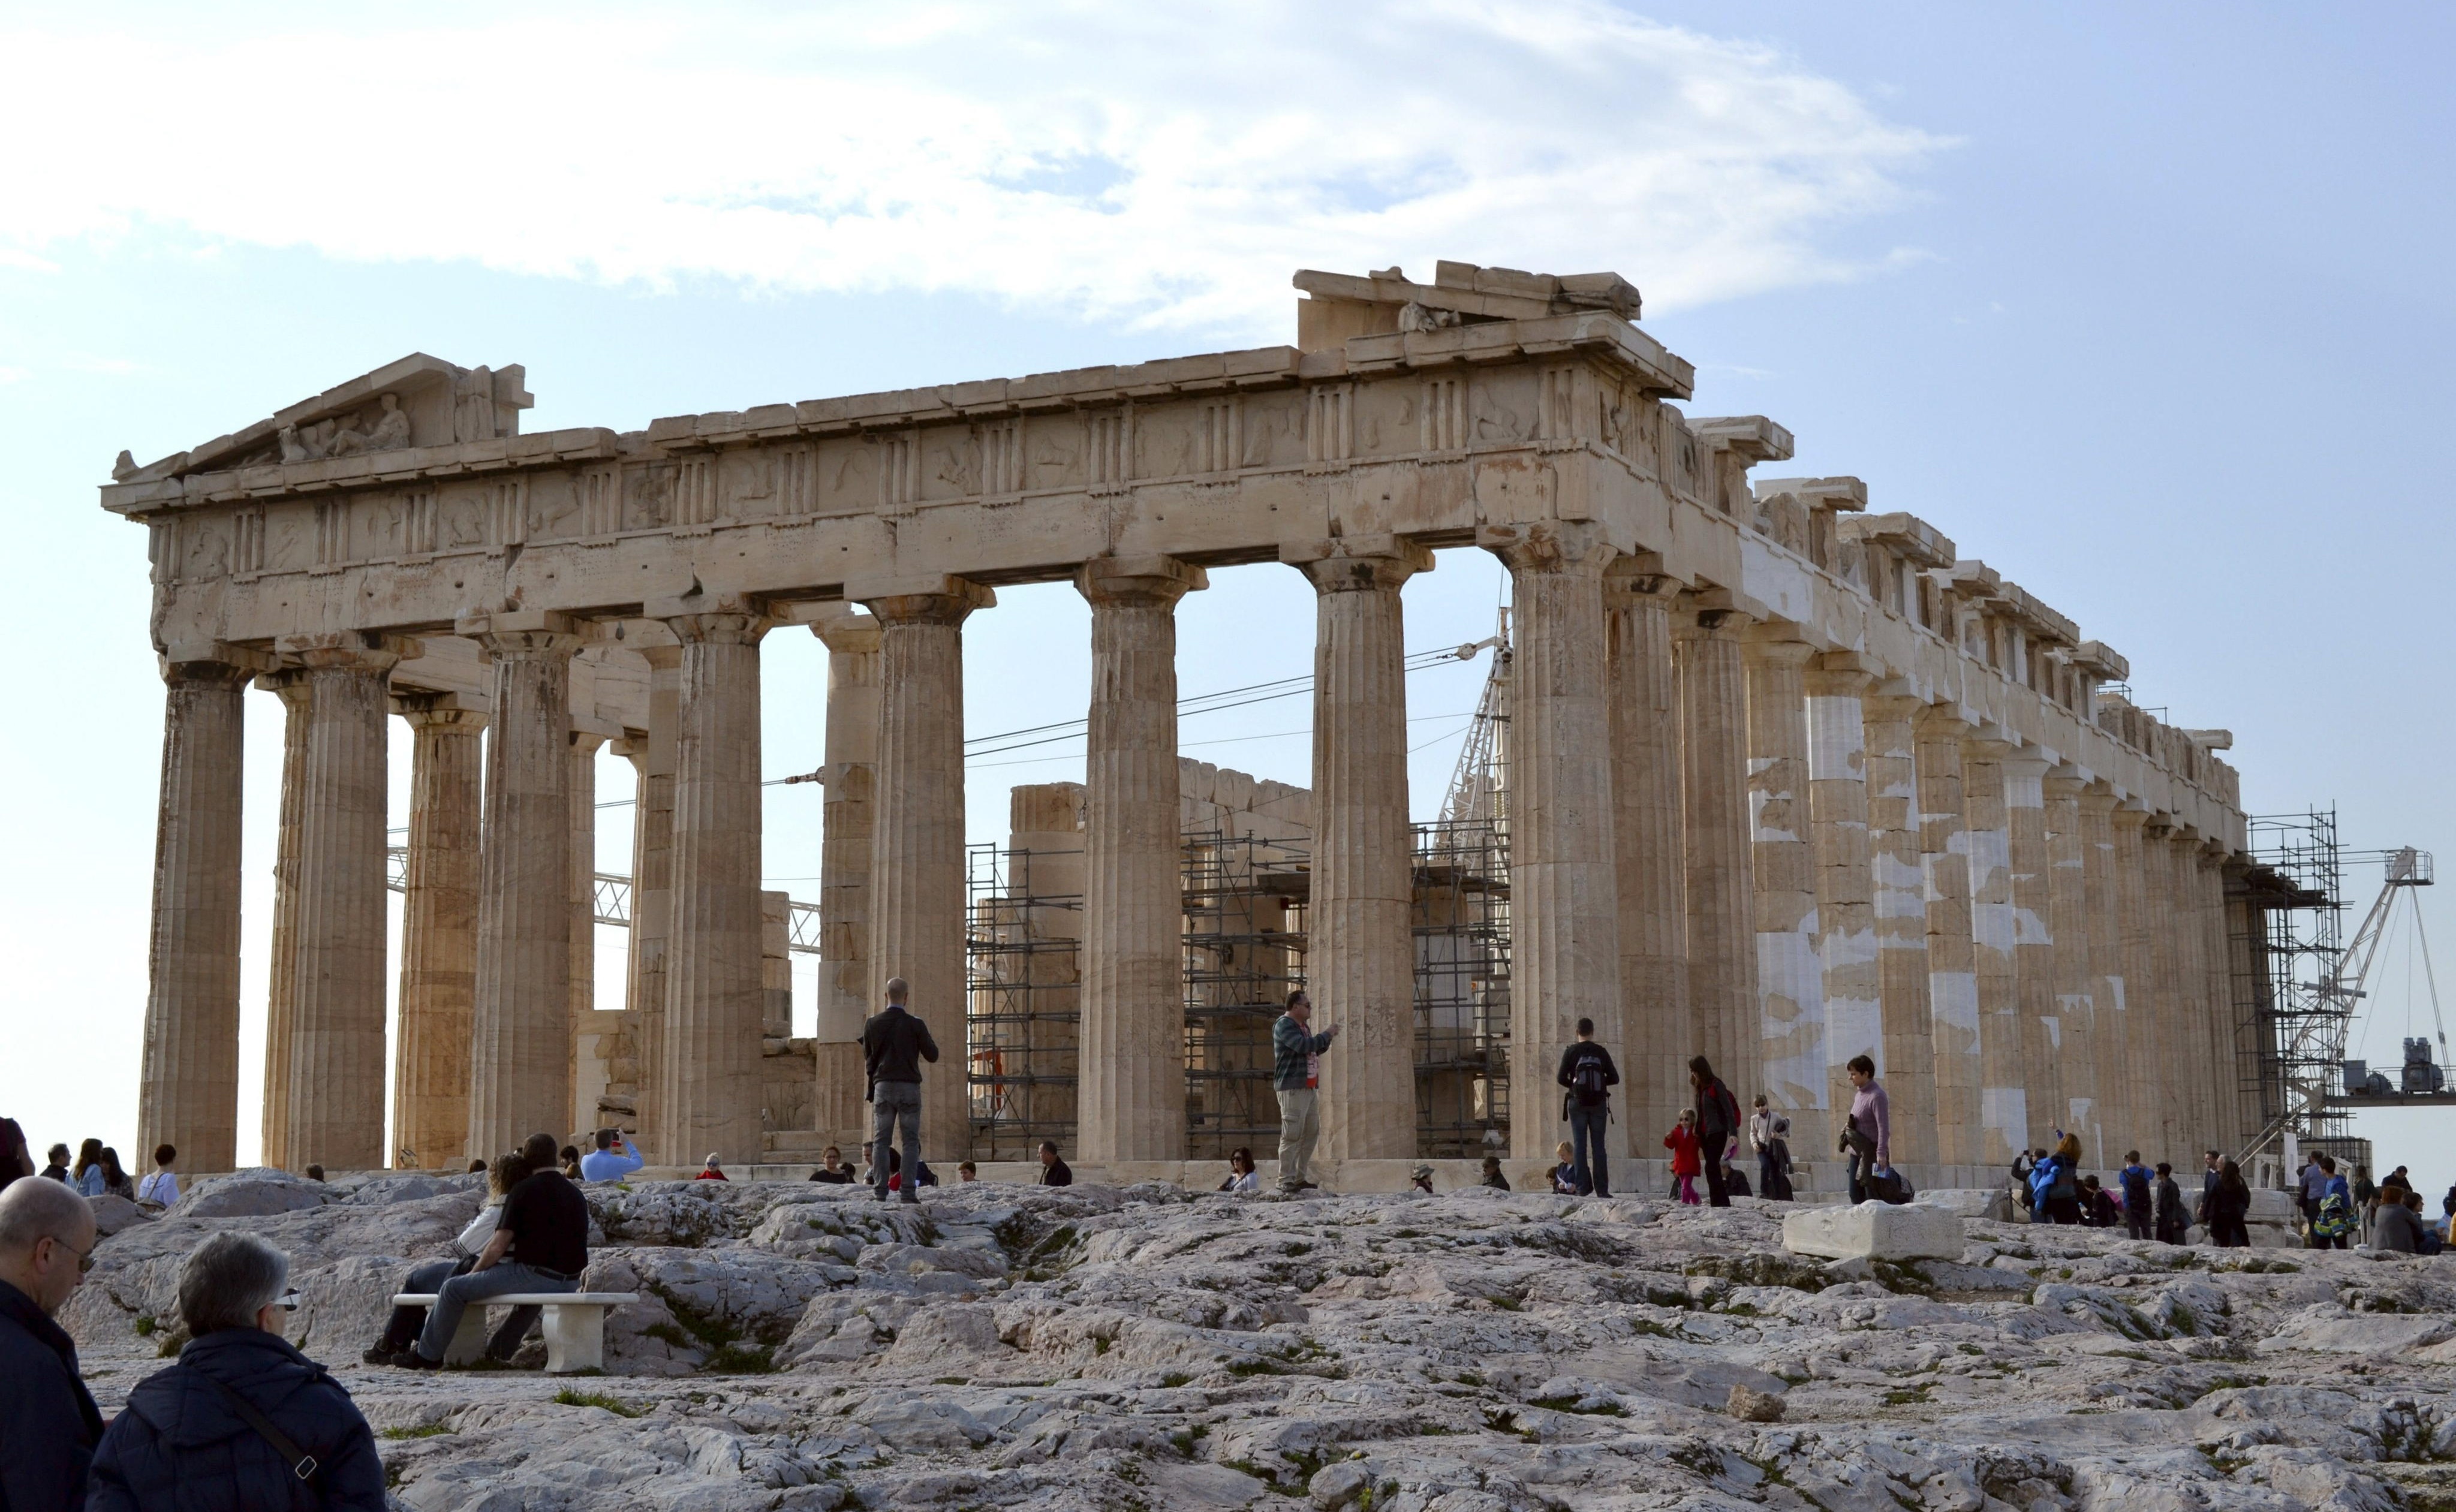 Grecia pide prestado al Louvre friso del Partenón